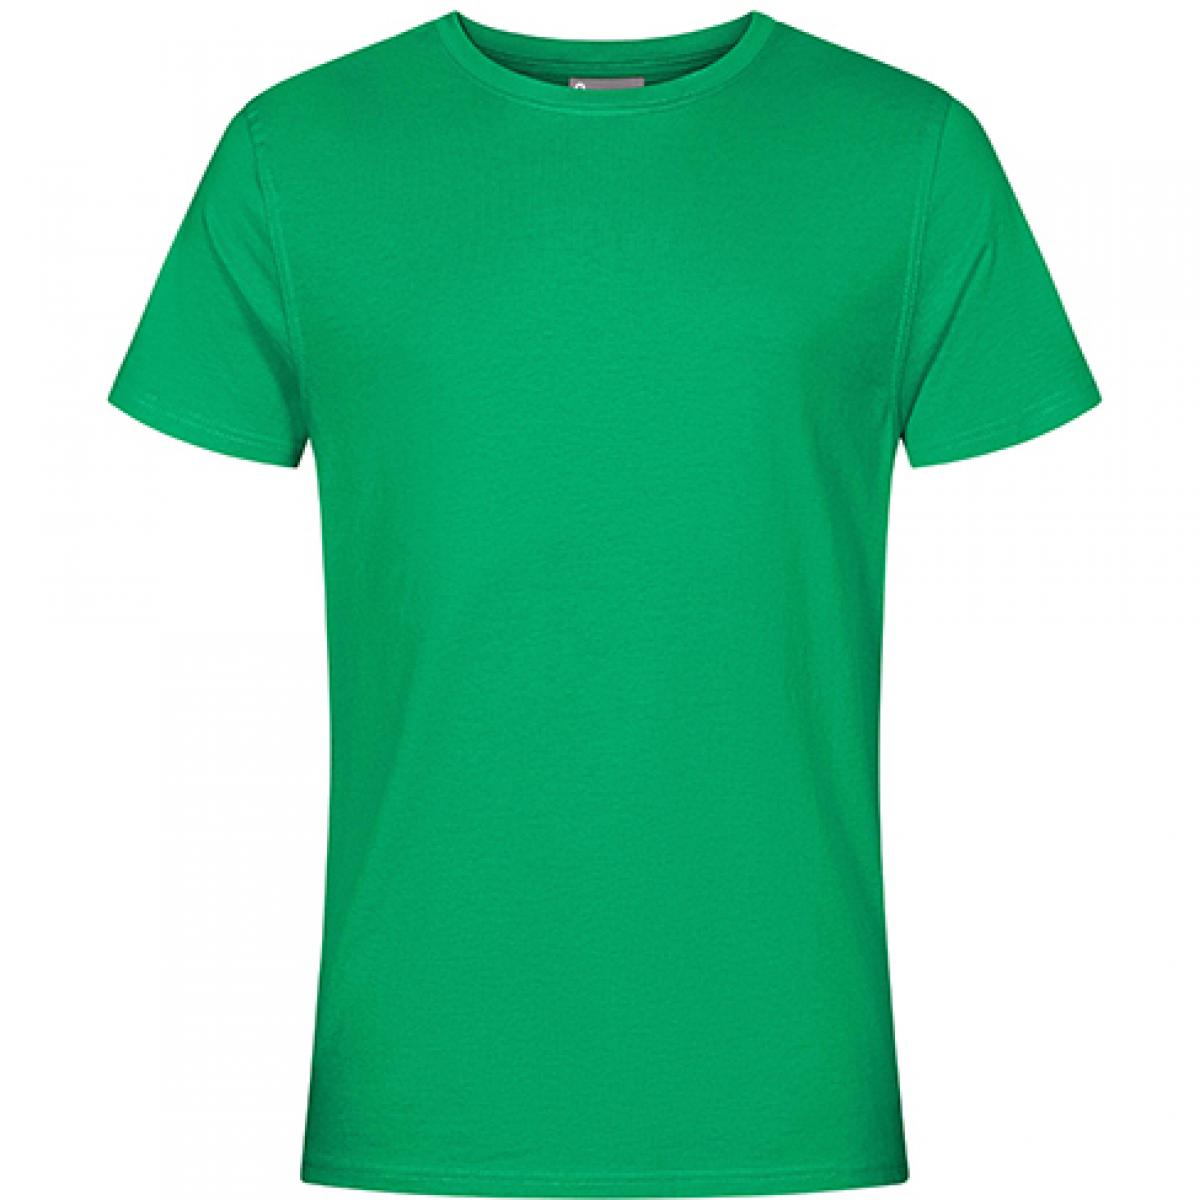 Hersteller: EXCD by Promodoro Herstellernummer: 3077 Artikelbezeichnung: Herren T-Shirt, Single-Jersey Farbe: Green